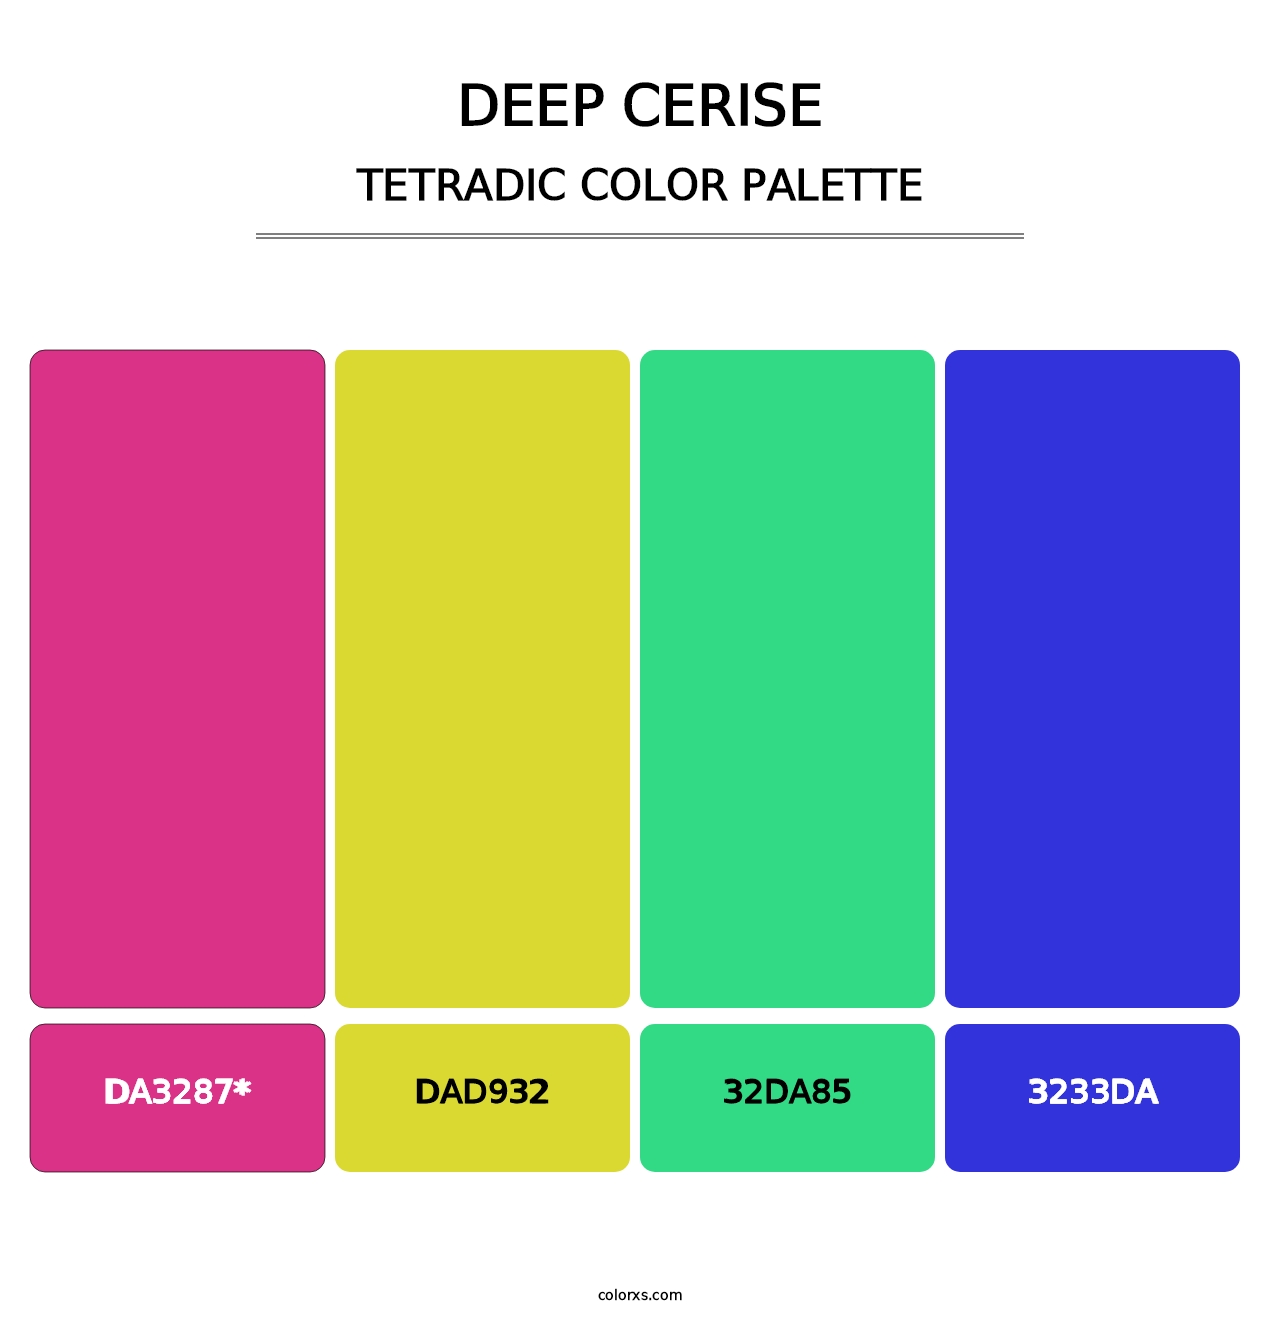 Deep Cerise - Tetradic Color Palette